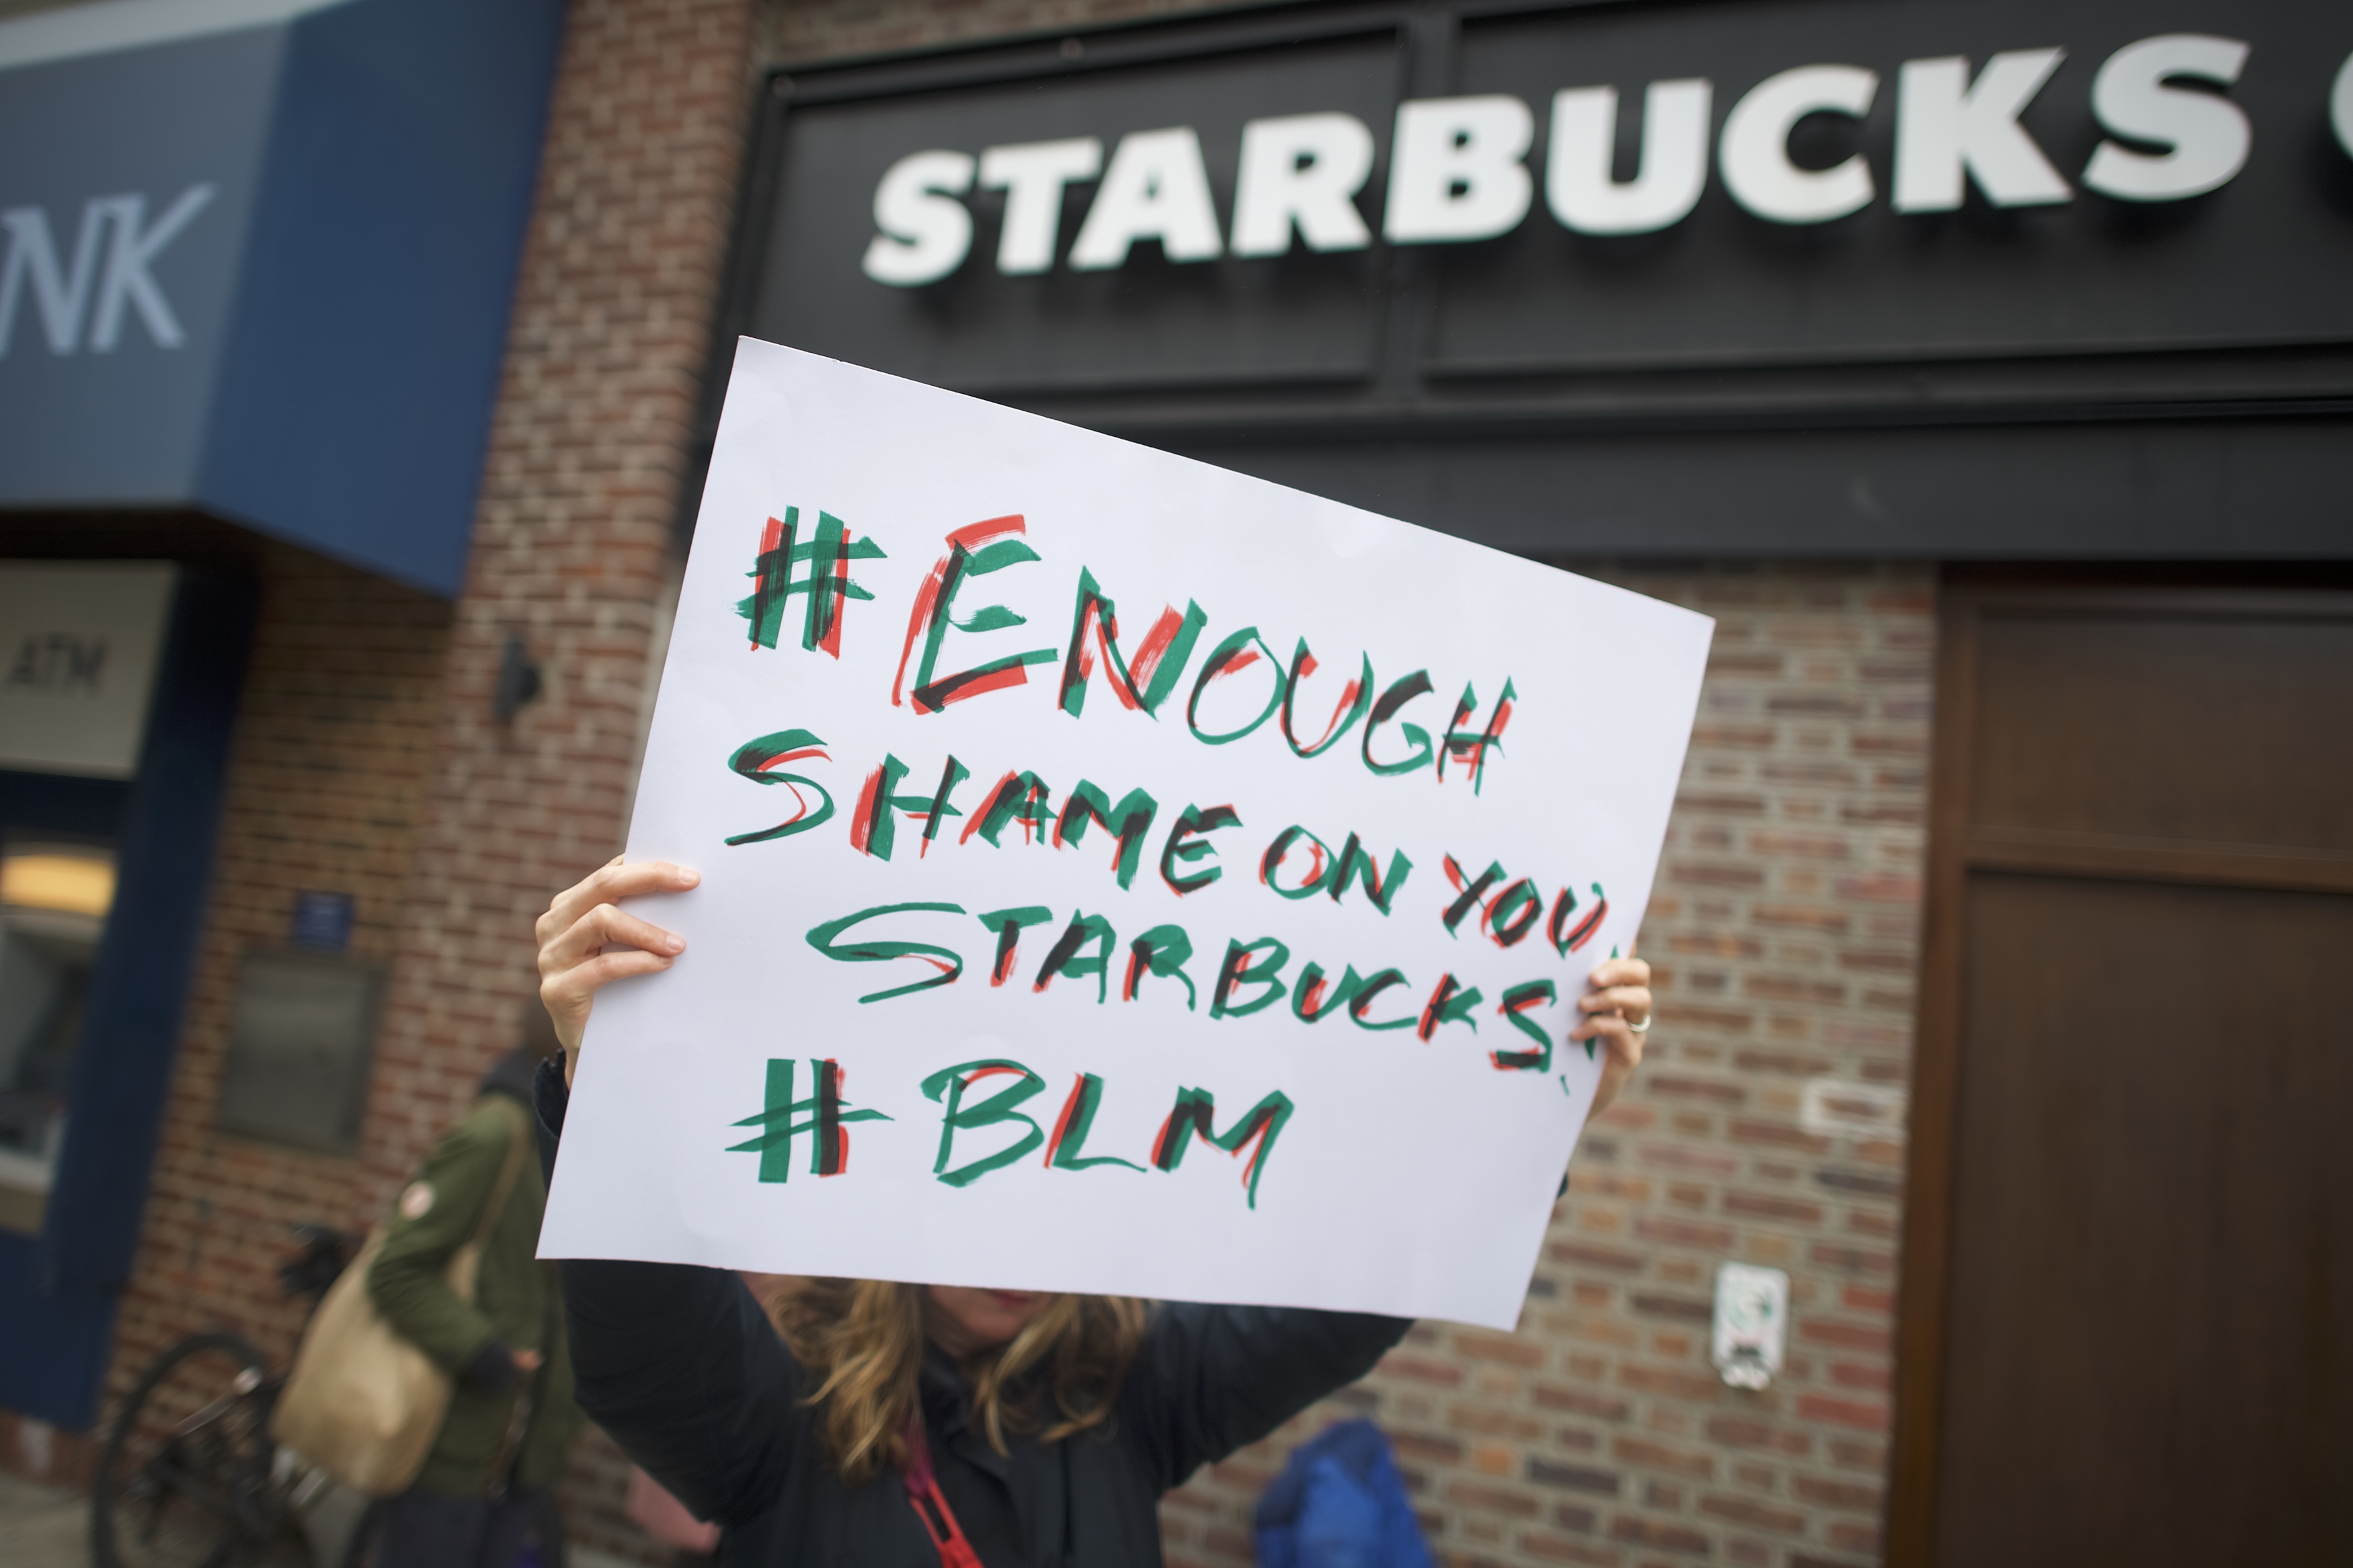 Protestors demonstrate outside a Starbucks on April 15, 2018 in Philadelphia, Pennsylvania. (Mark Makela/Getty Images)